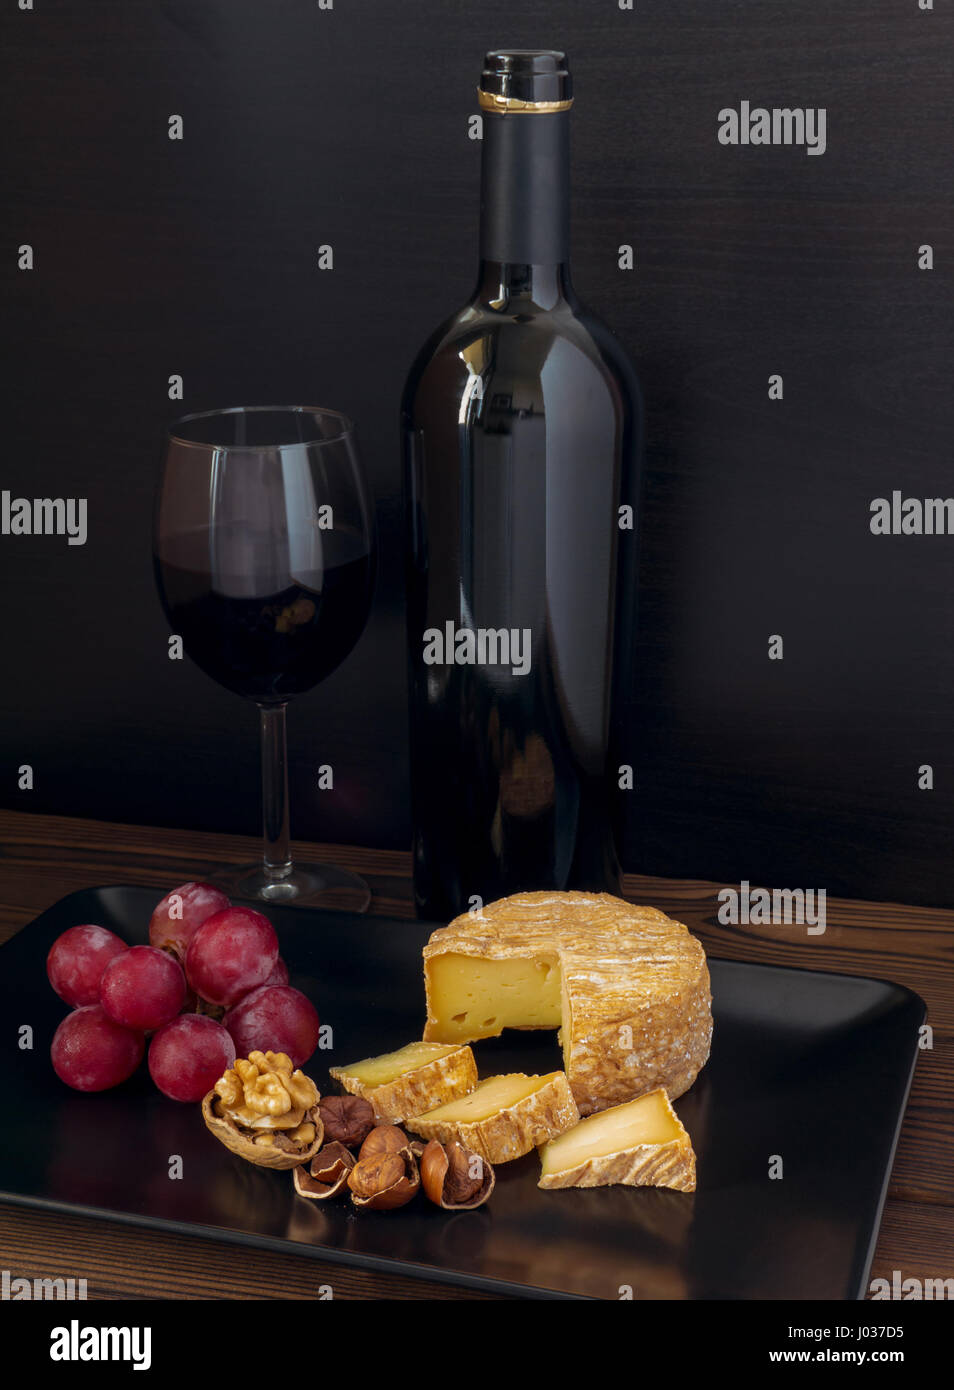 Waschen-Rinde Käse, Haselnüsse, Walnuss, Rote Traube und Wein im Glas und Flasche Stockfoto